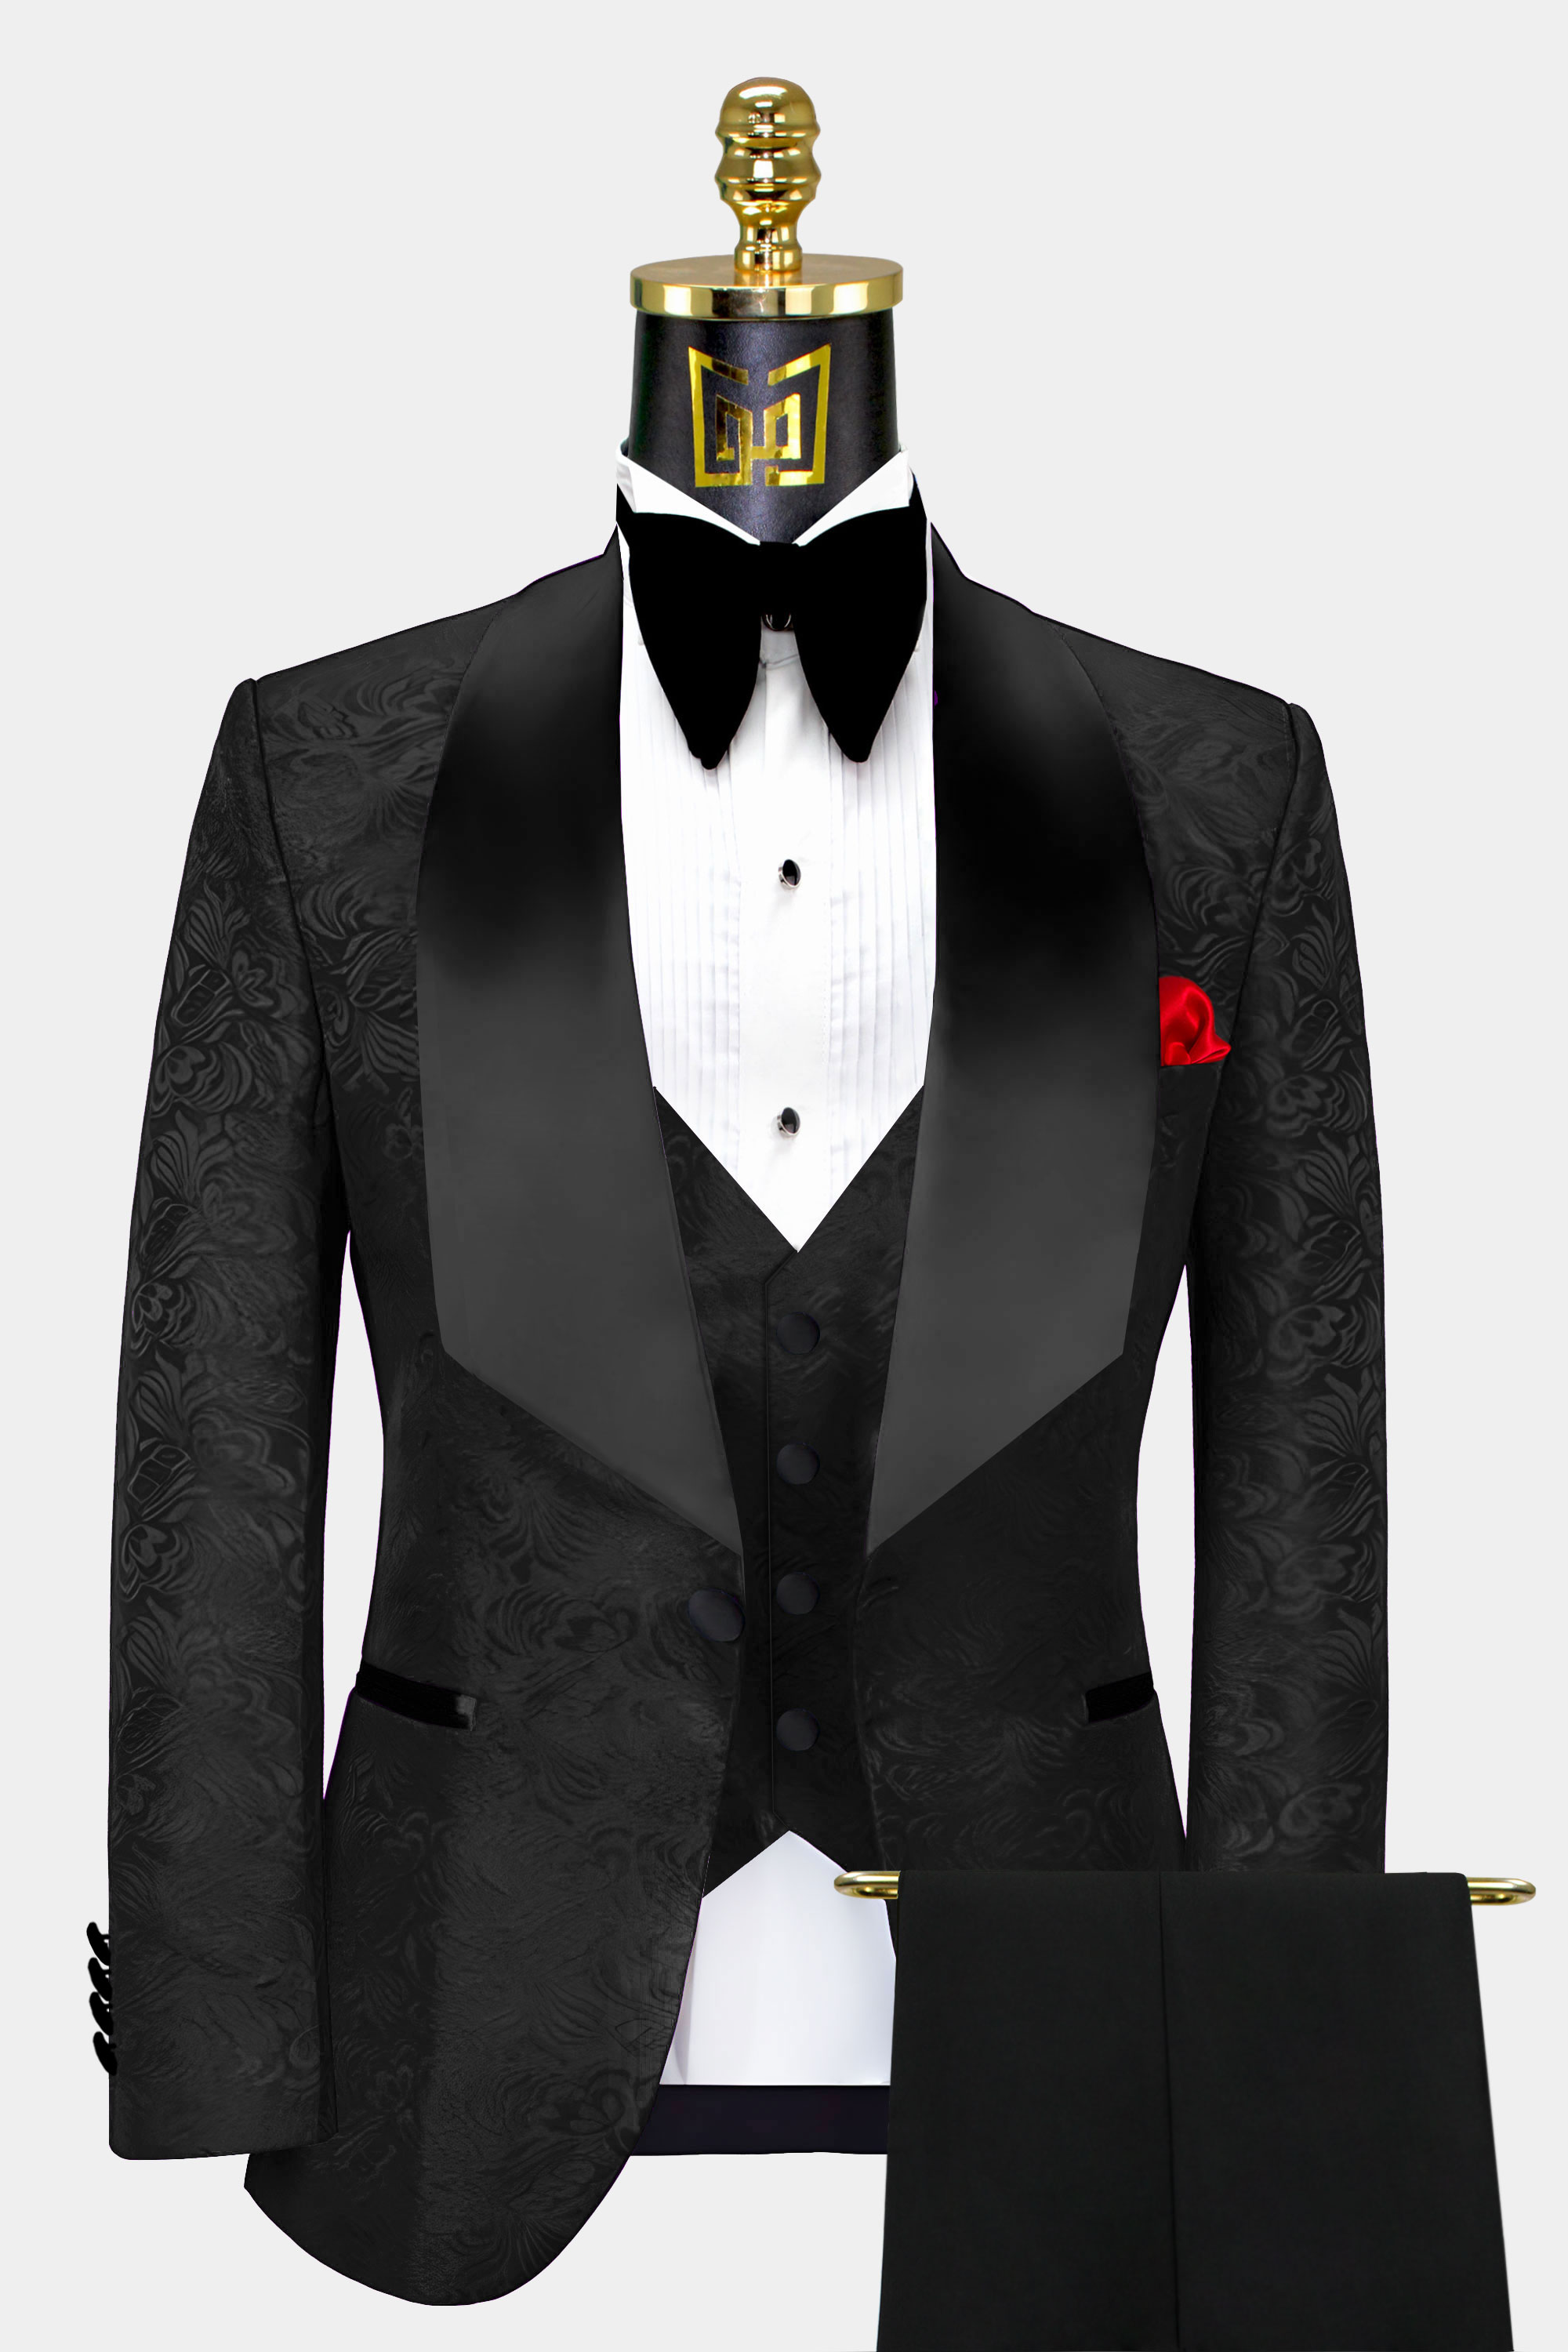 Mens-All-Black-Tuxedo-Suit-Groom-Wedding-Prom-Suit-from-Gentlemansguru.com